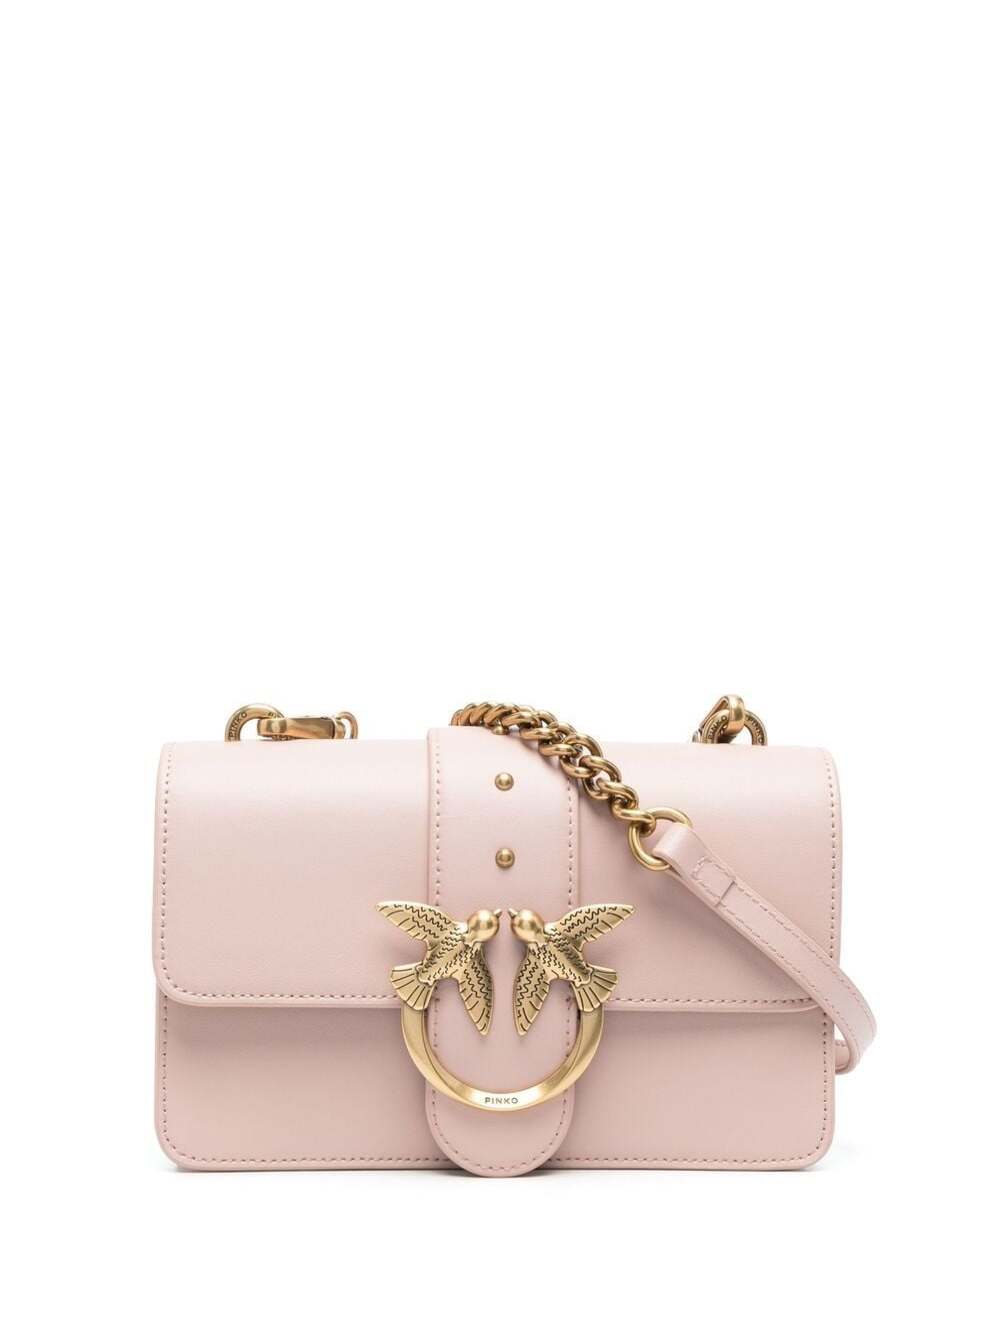 Pinko Love Mini Simple Pink Leather Crossbody Bag Pinko Woman